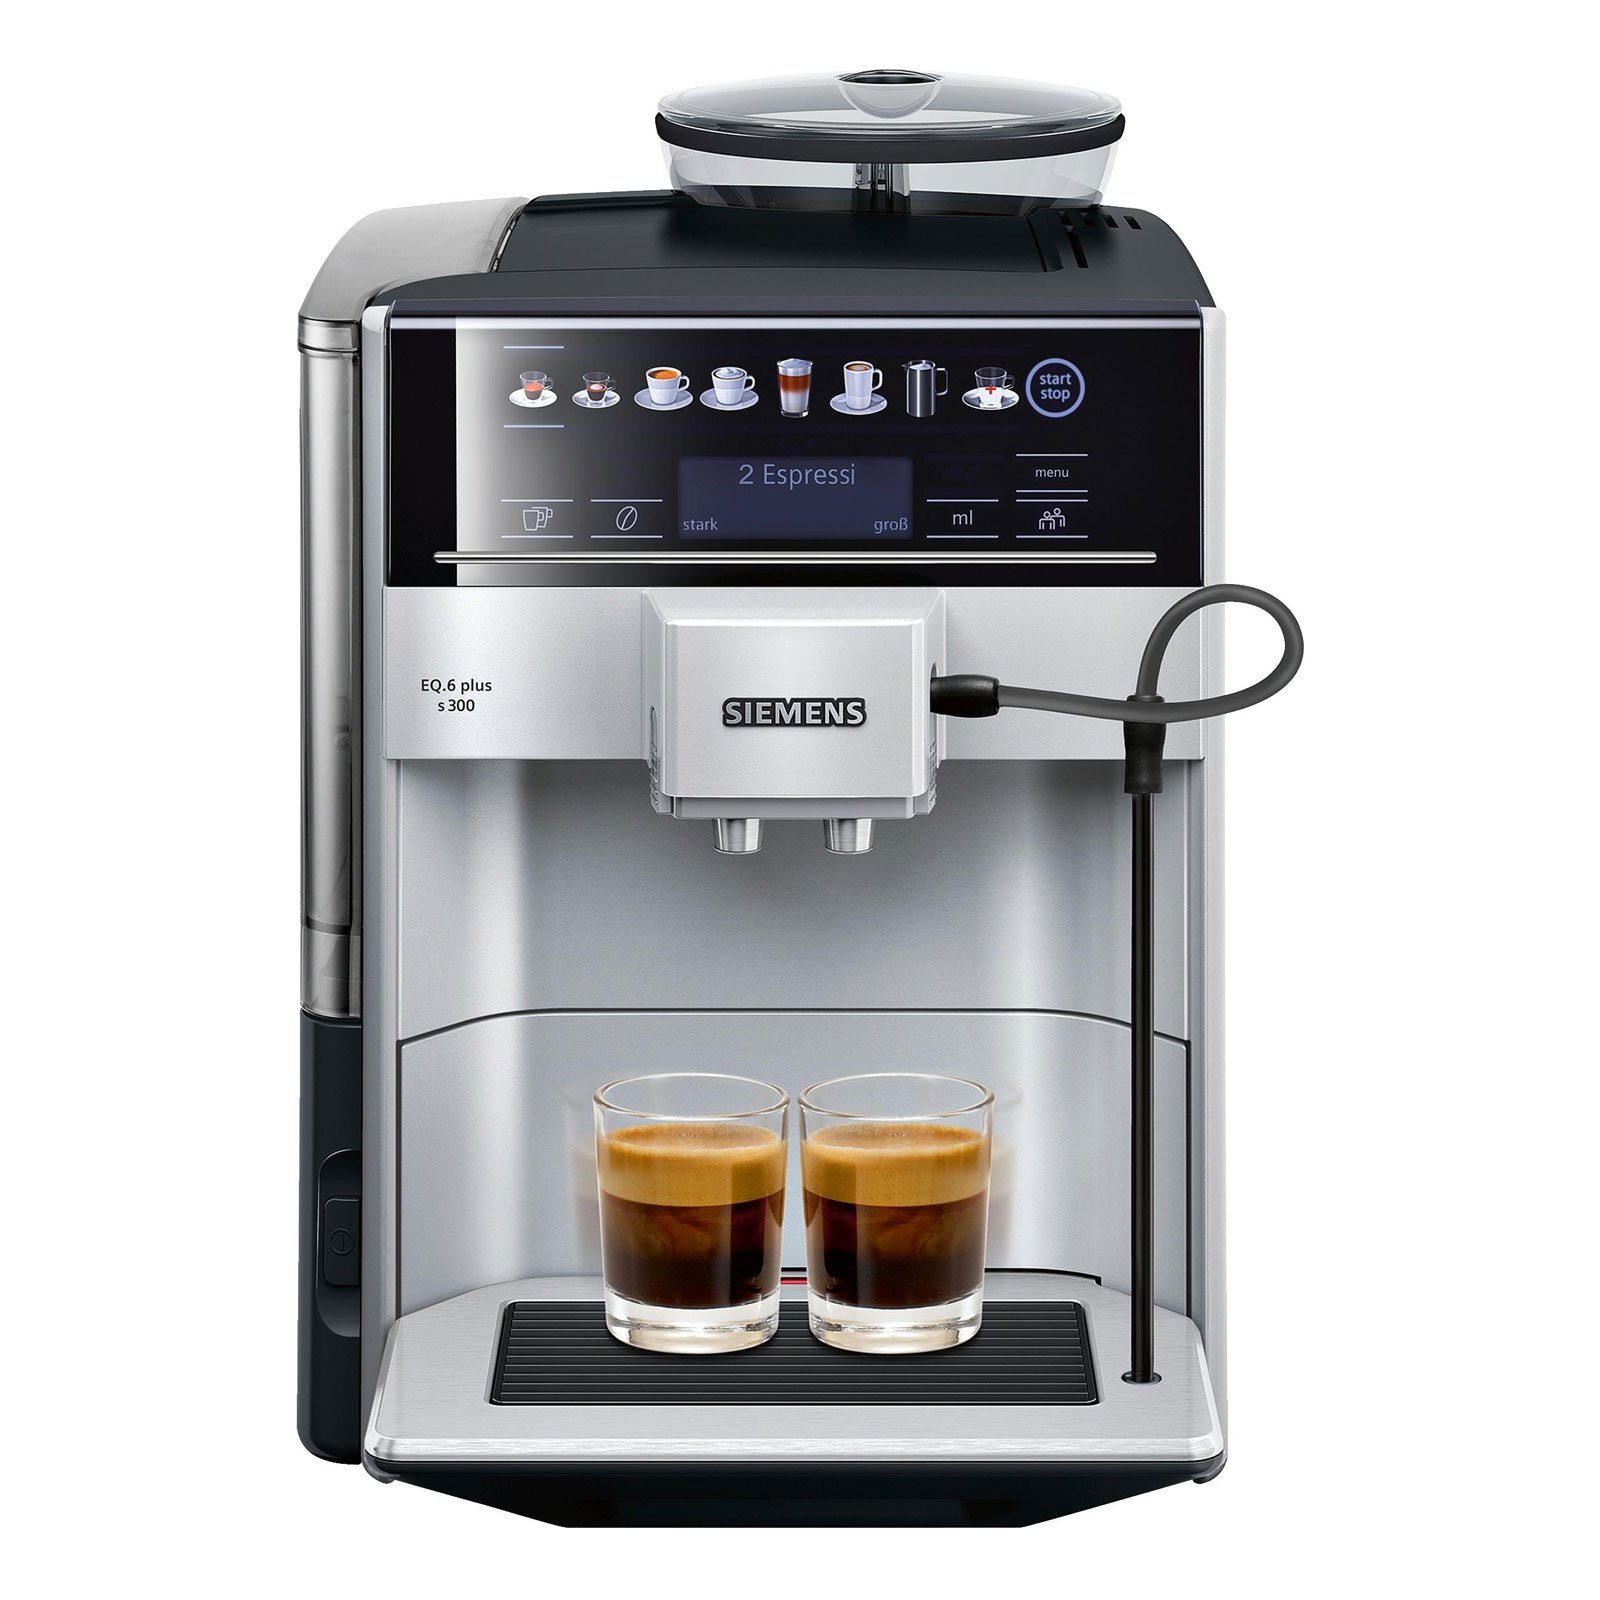 plus TE653501DE SIEMENS s300 EQ.6 Kaffeevollautomat